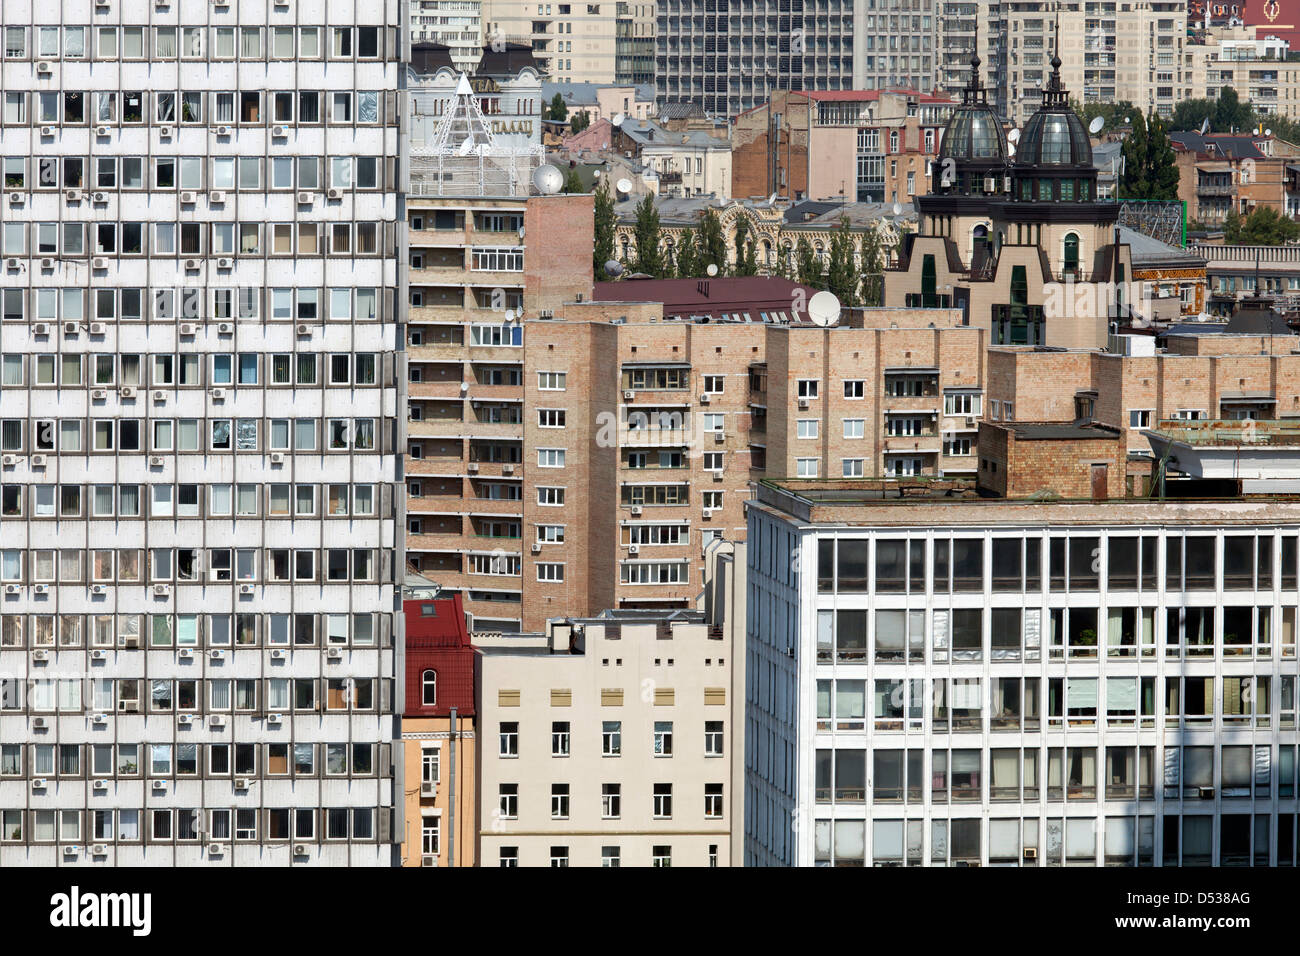 Kiev, Ukraine, buildings in the city center Stock Photo